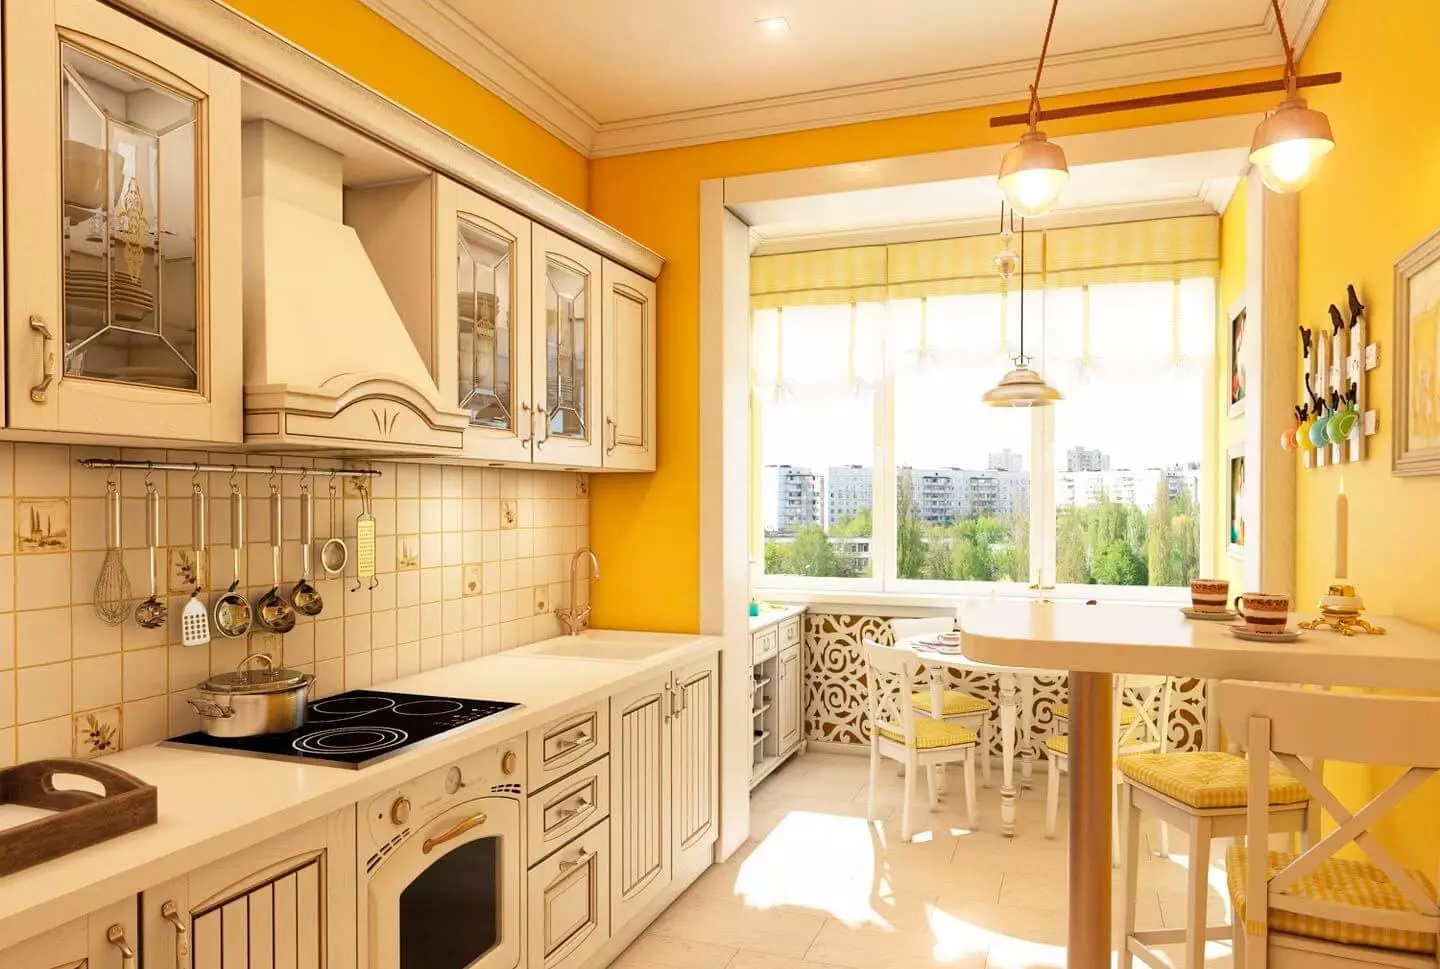 آشپزخانه پرونس (130 عکس): طراحی داخلی آشپزخانه سفید، هدست آشپزخانه در سبک زیتون. چگونه دیوارها را ترتیب دهید؟ چگونه اتاق را با گل و نقاشی تزئین کنیم؟ 21162_9